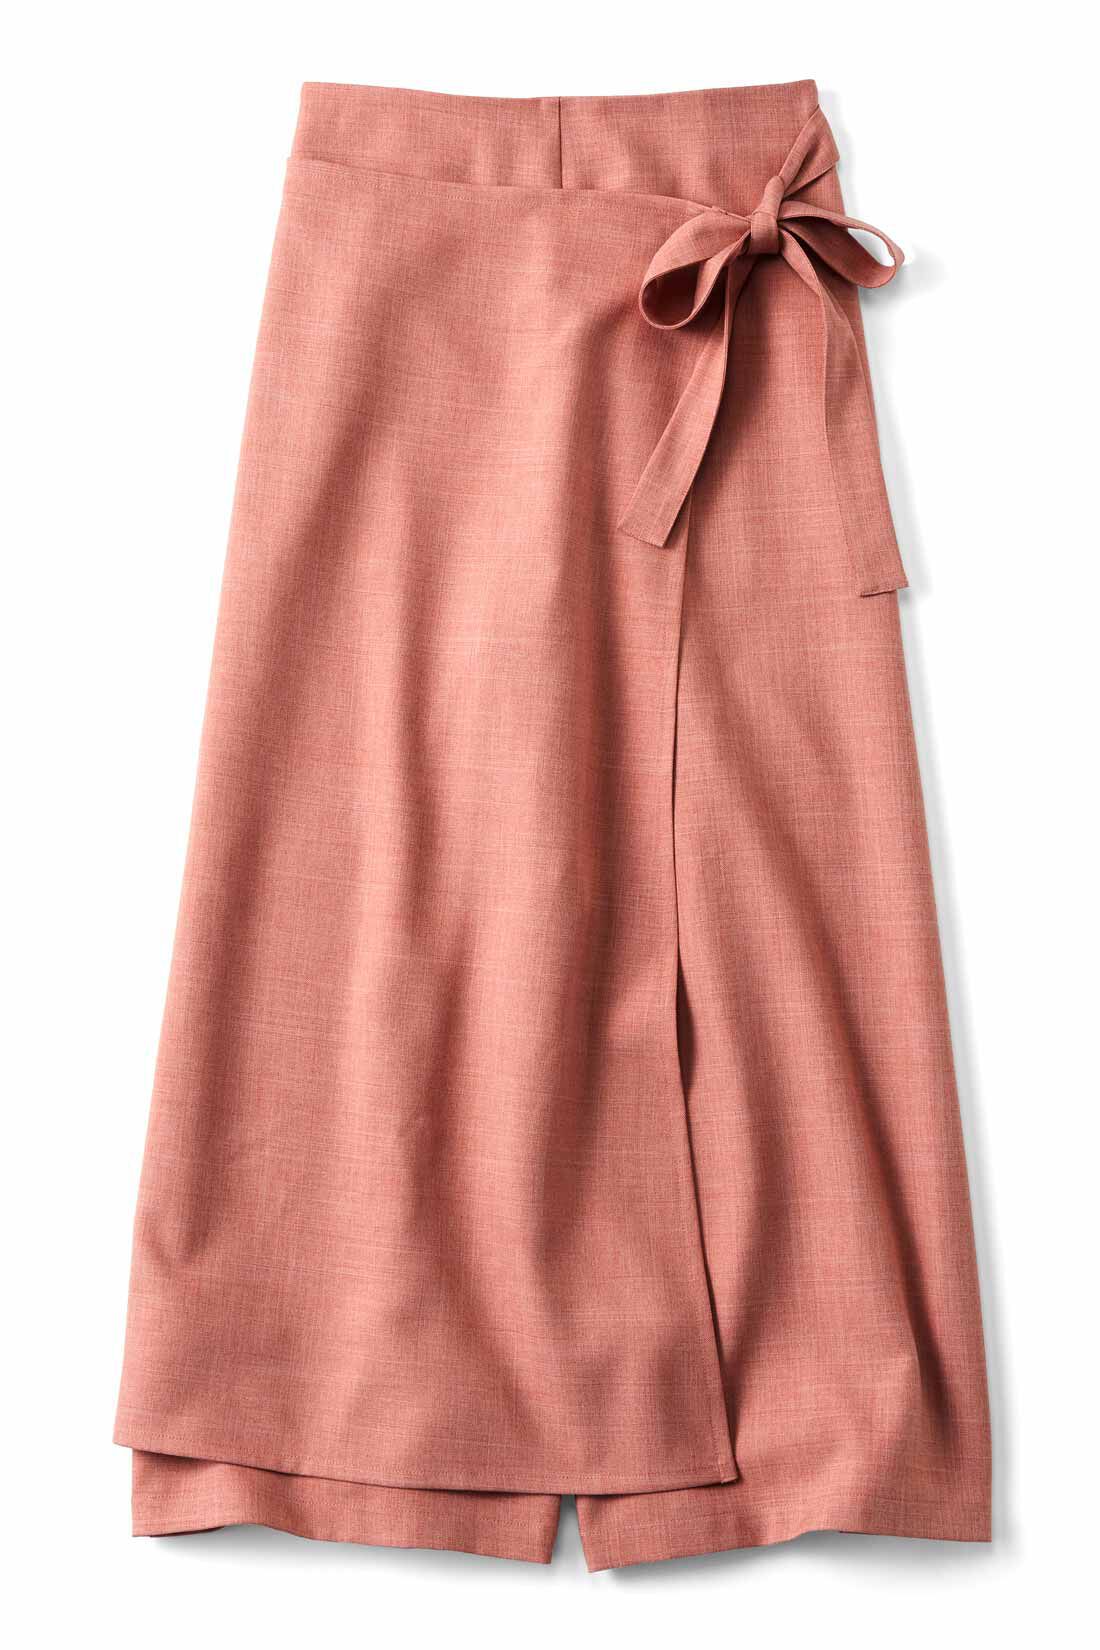 WEB限定お買い得商品|スカート見え ラップパンツ〈フラミンゴ〉|シャリッとした素材なのですっきり見えます。